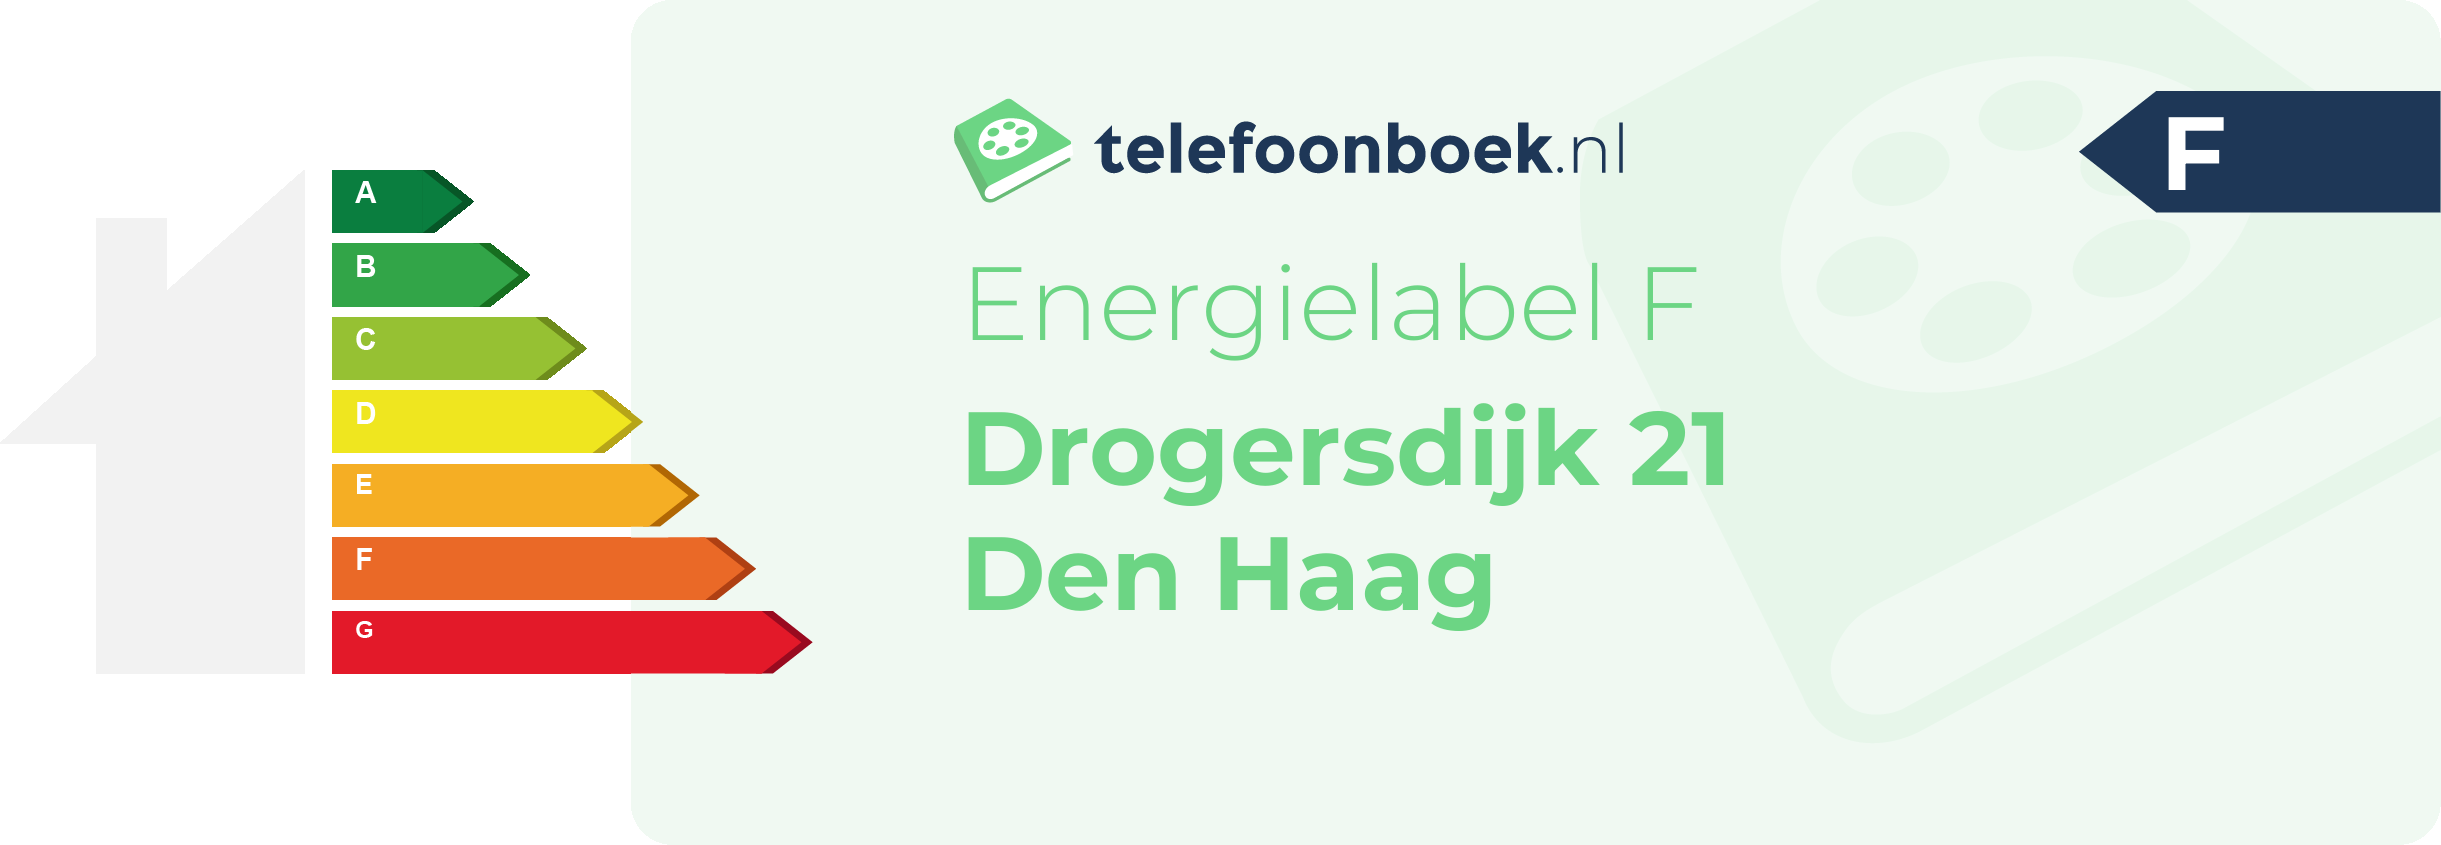 Energielabel Drogersdijk 21 Den Haag